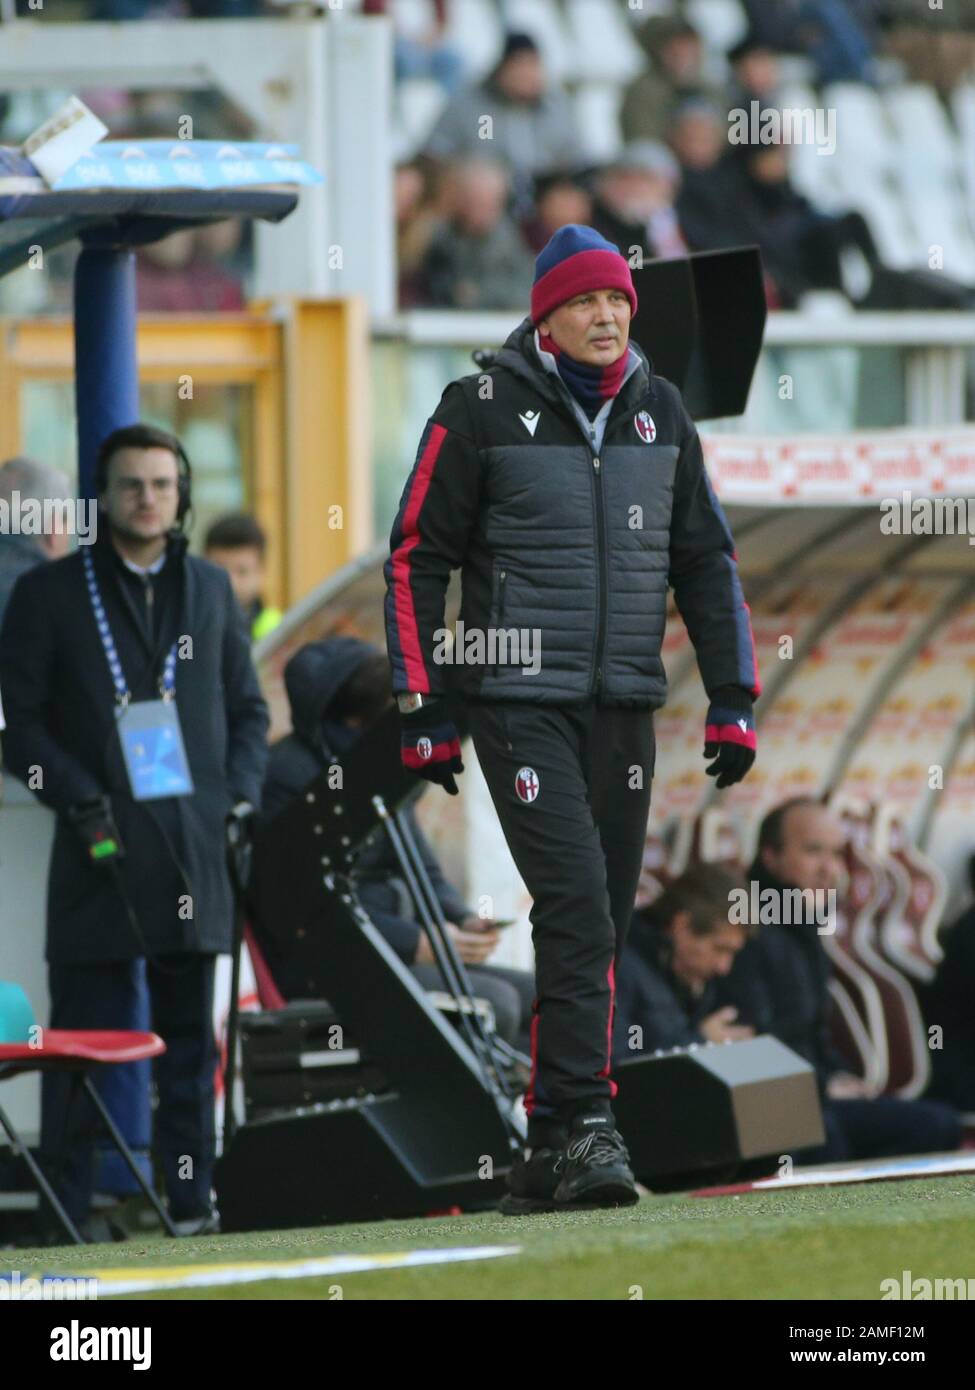 Sinisa mihailovic (coach bologna) durante Torino vs Bologna, Torino, Italia, 12 gennaio 2020, Campionato Italiano Calcio Serie A Men Foto Stock